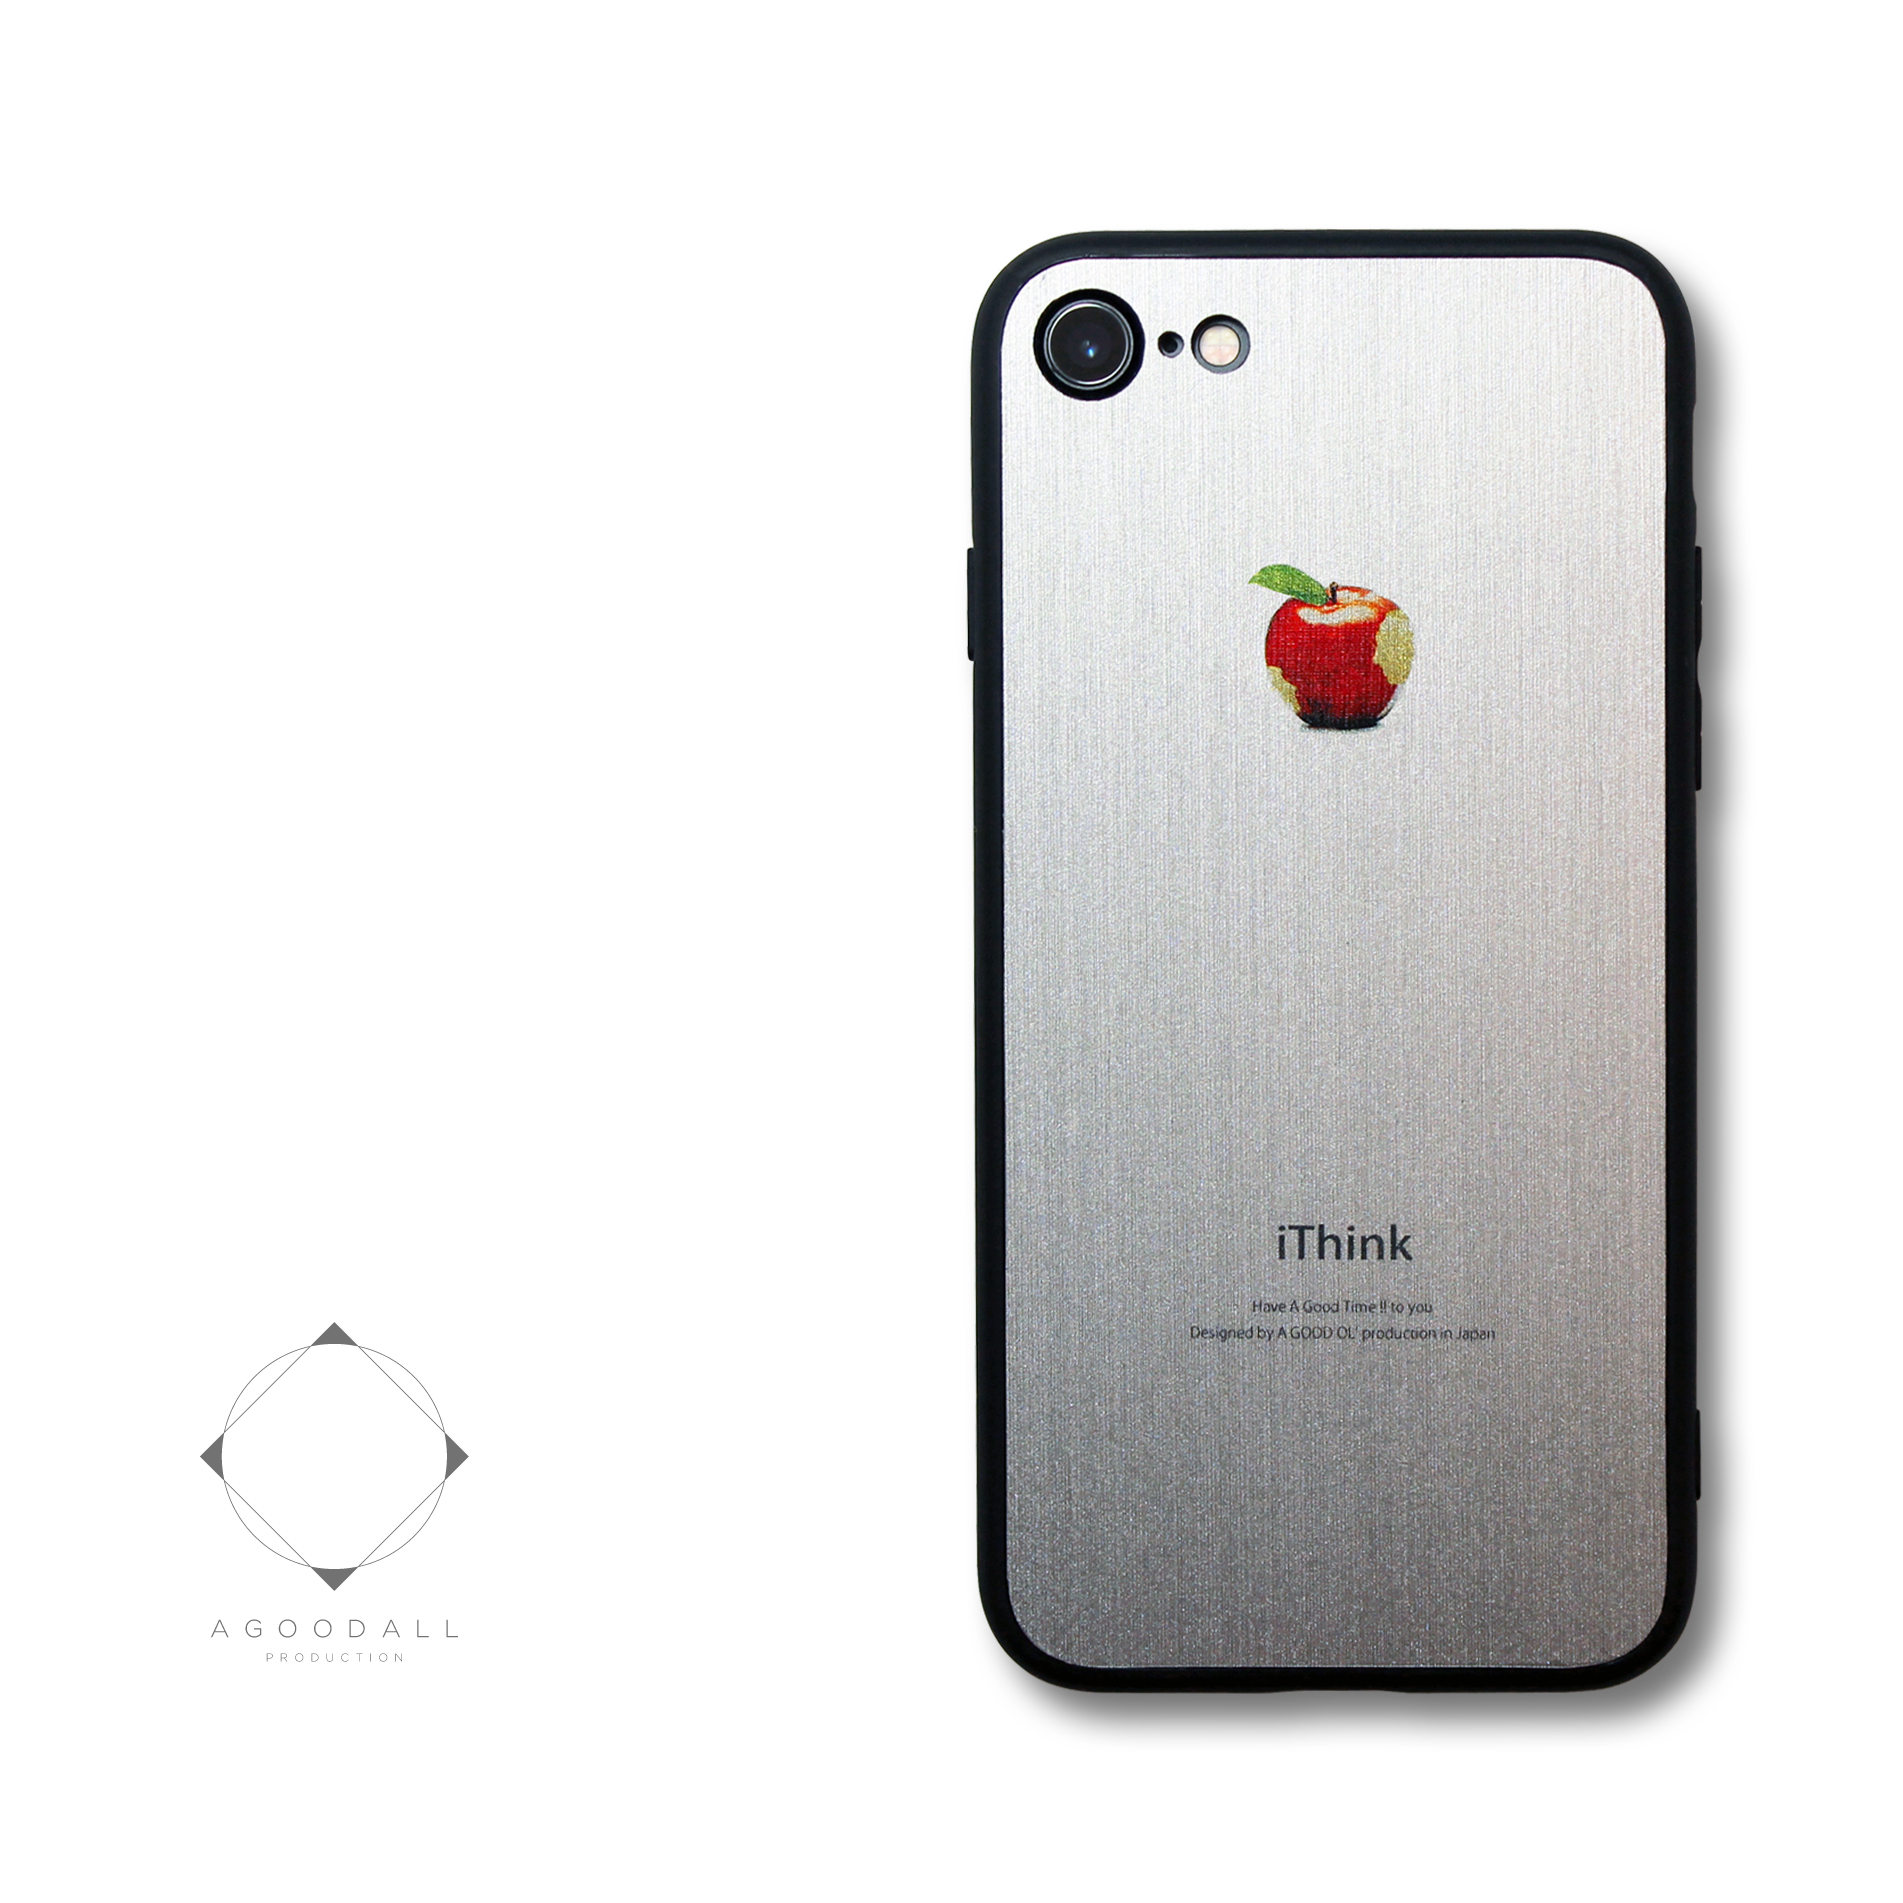 まるで金属のようなiphoneケース Iphoneケースカバー ホワイト ブラック 赤リンゴ 耐衝撃 Iichi ハンドメイド クラフト作品 手仕事品の通販